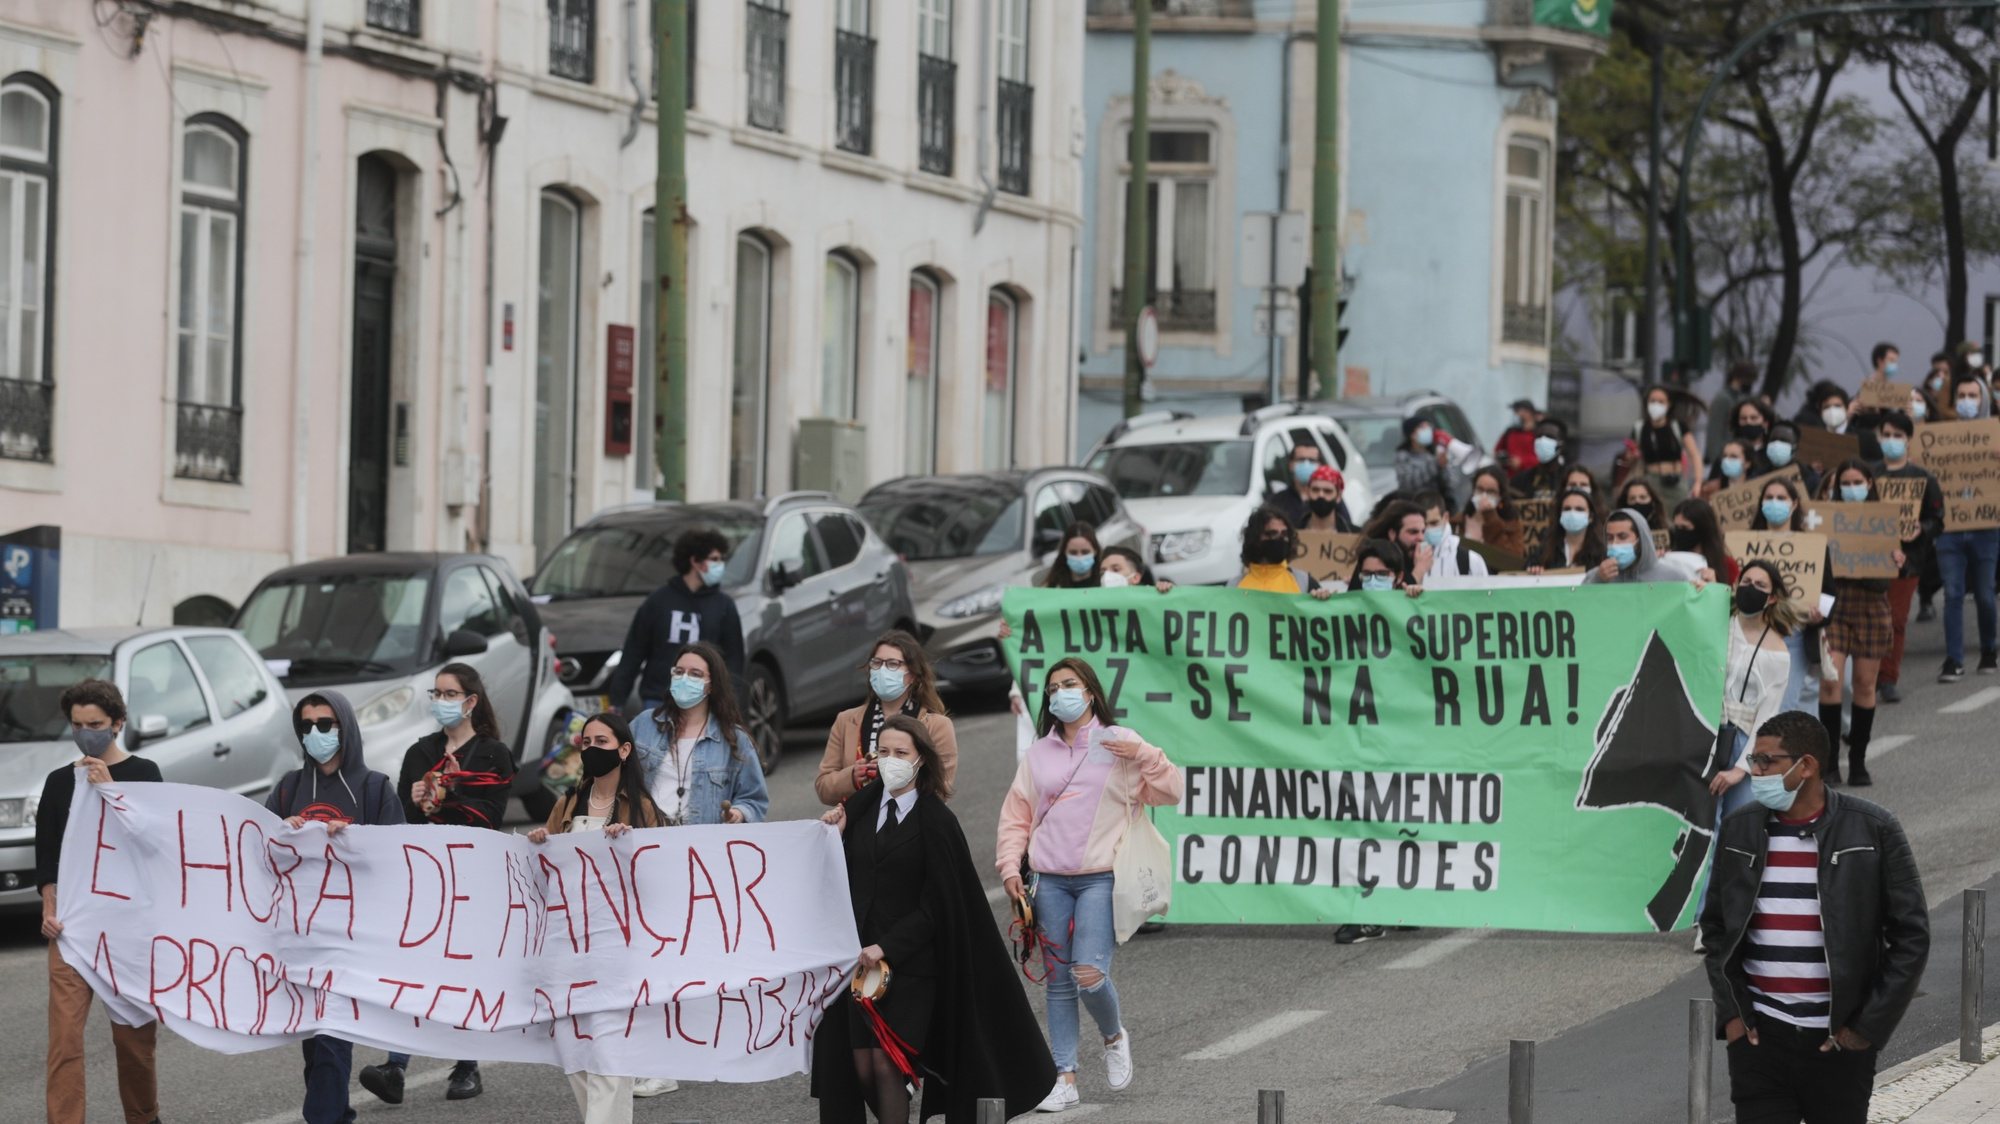 Manifestação de estudantes do ensino superior contra o pagamento de propinas sob o lema &quot;É hora de avançar! A propina tem de acabar!&quot;, em Lisboa, 28 de abril de 2021. TIAGO PETINGA/LUSA